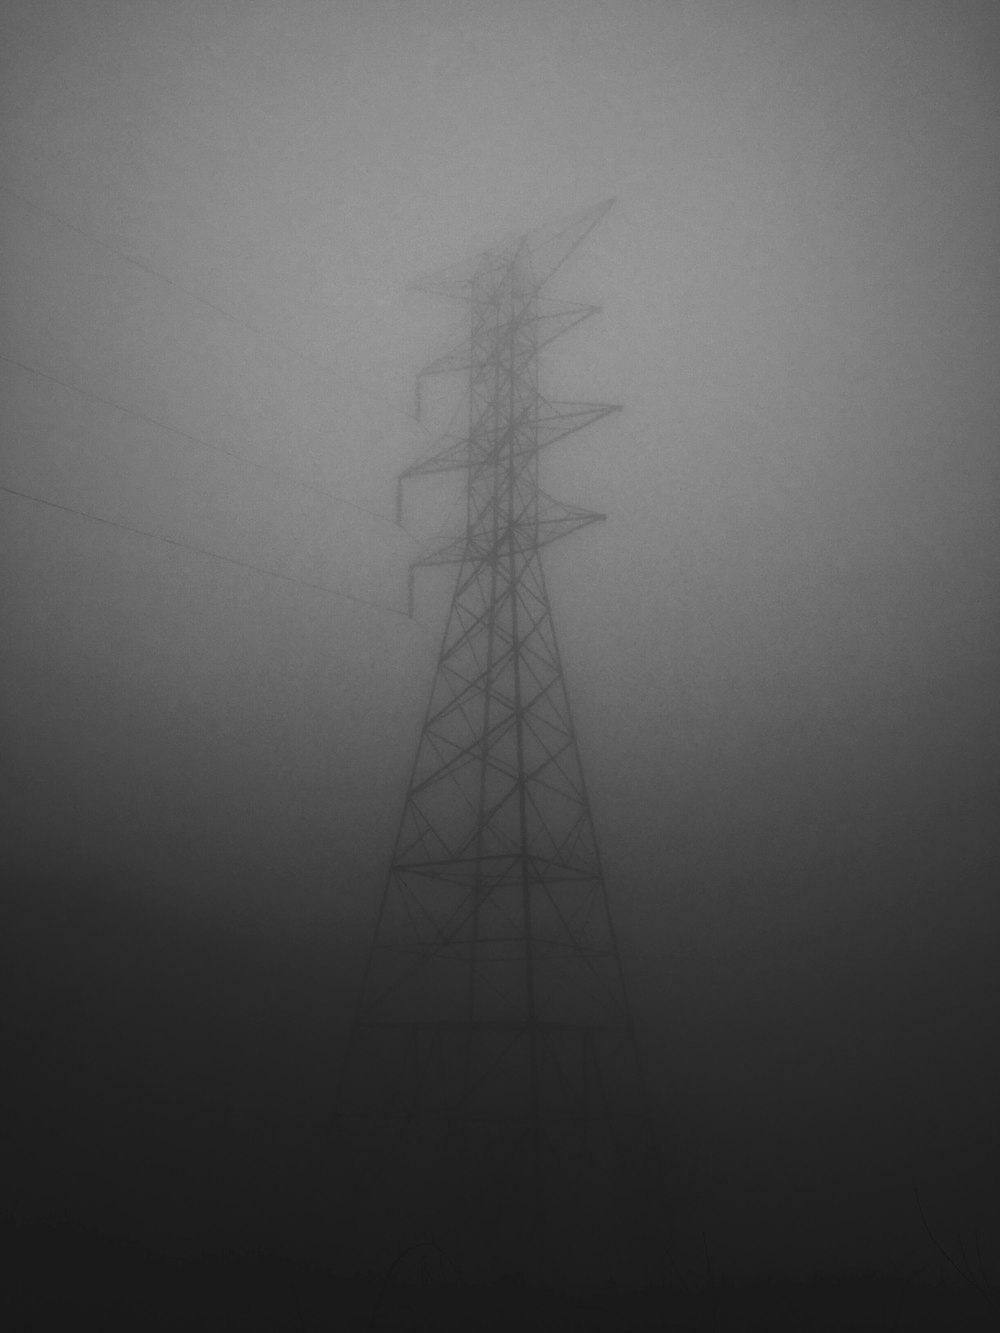 회색 구름으로 뒤덮인 전기 철탑